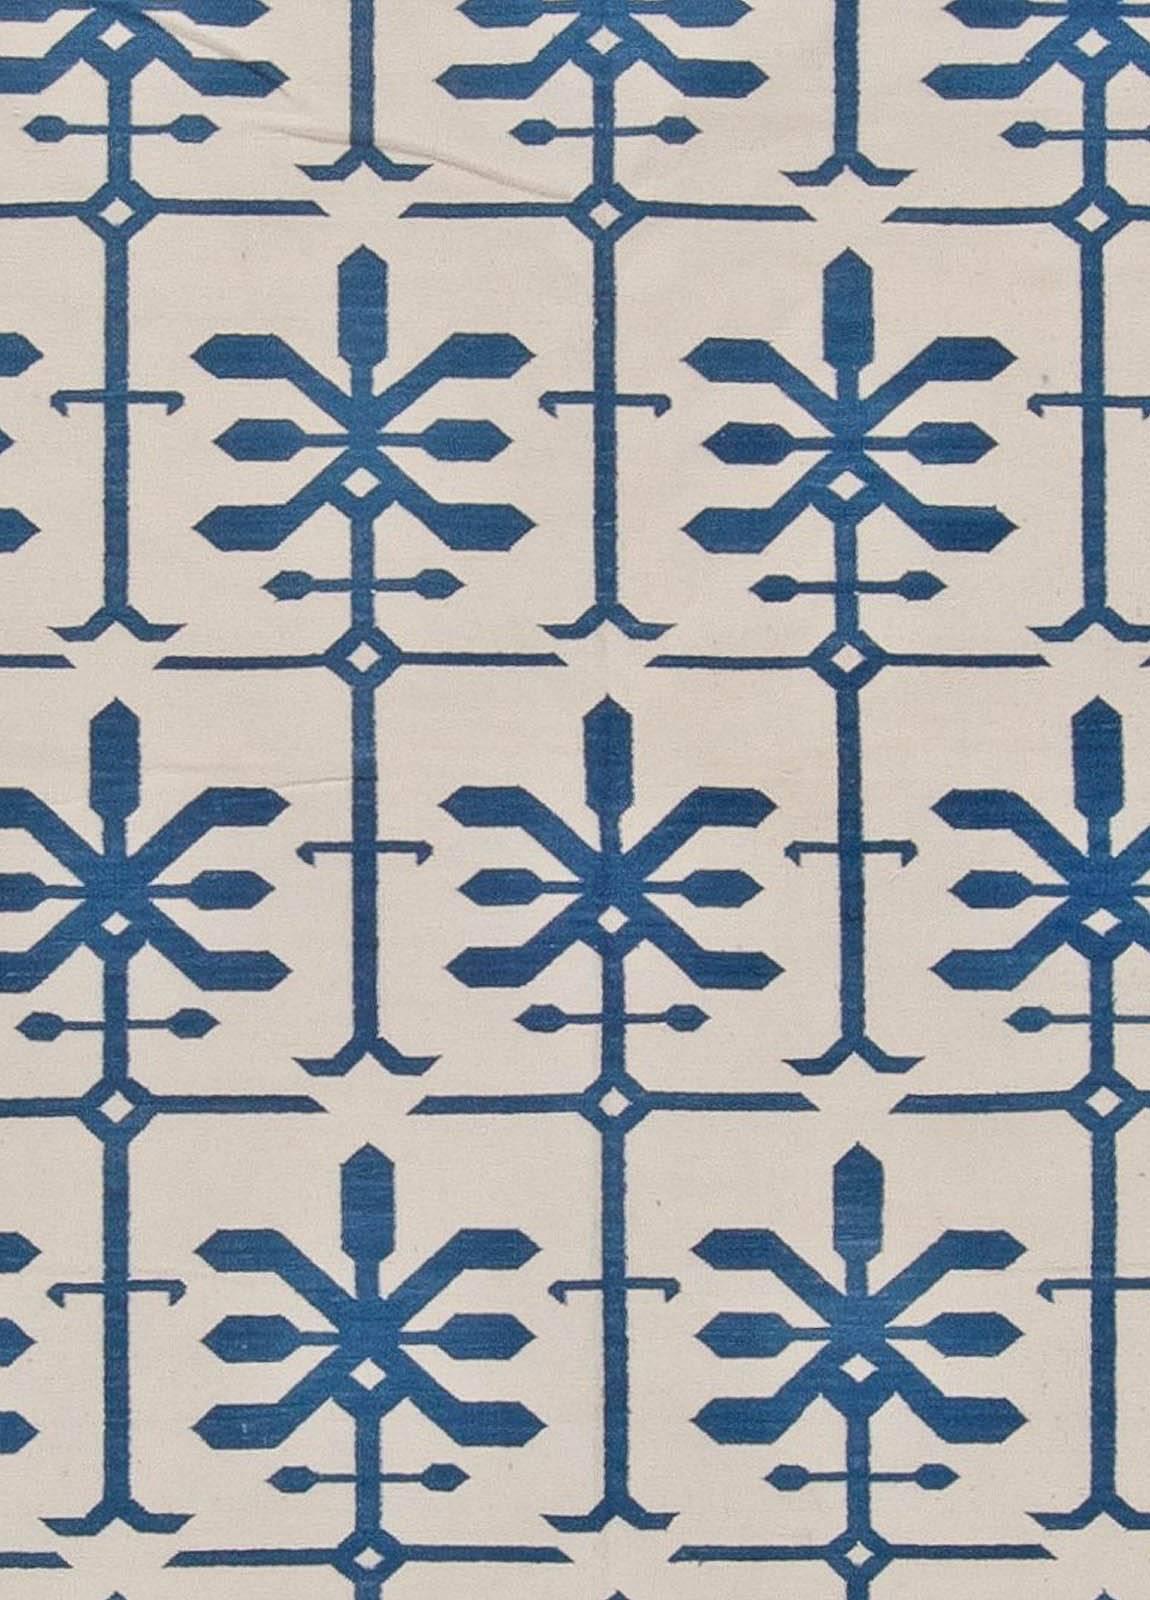 Zeitgenössischer indischer Dhurrie-Teppich in Blau und Weiß, handgefertigt von Doris Leslie Blau
Größe: 10'0